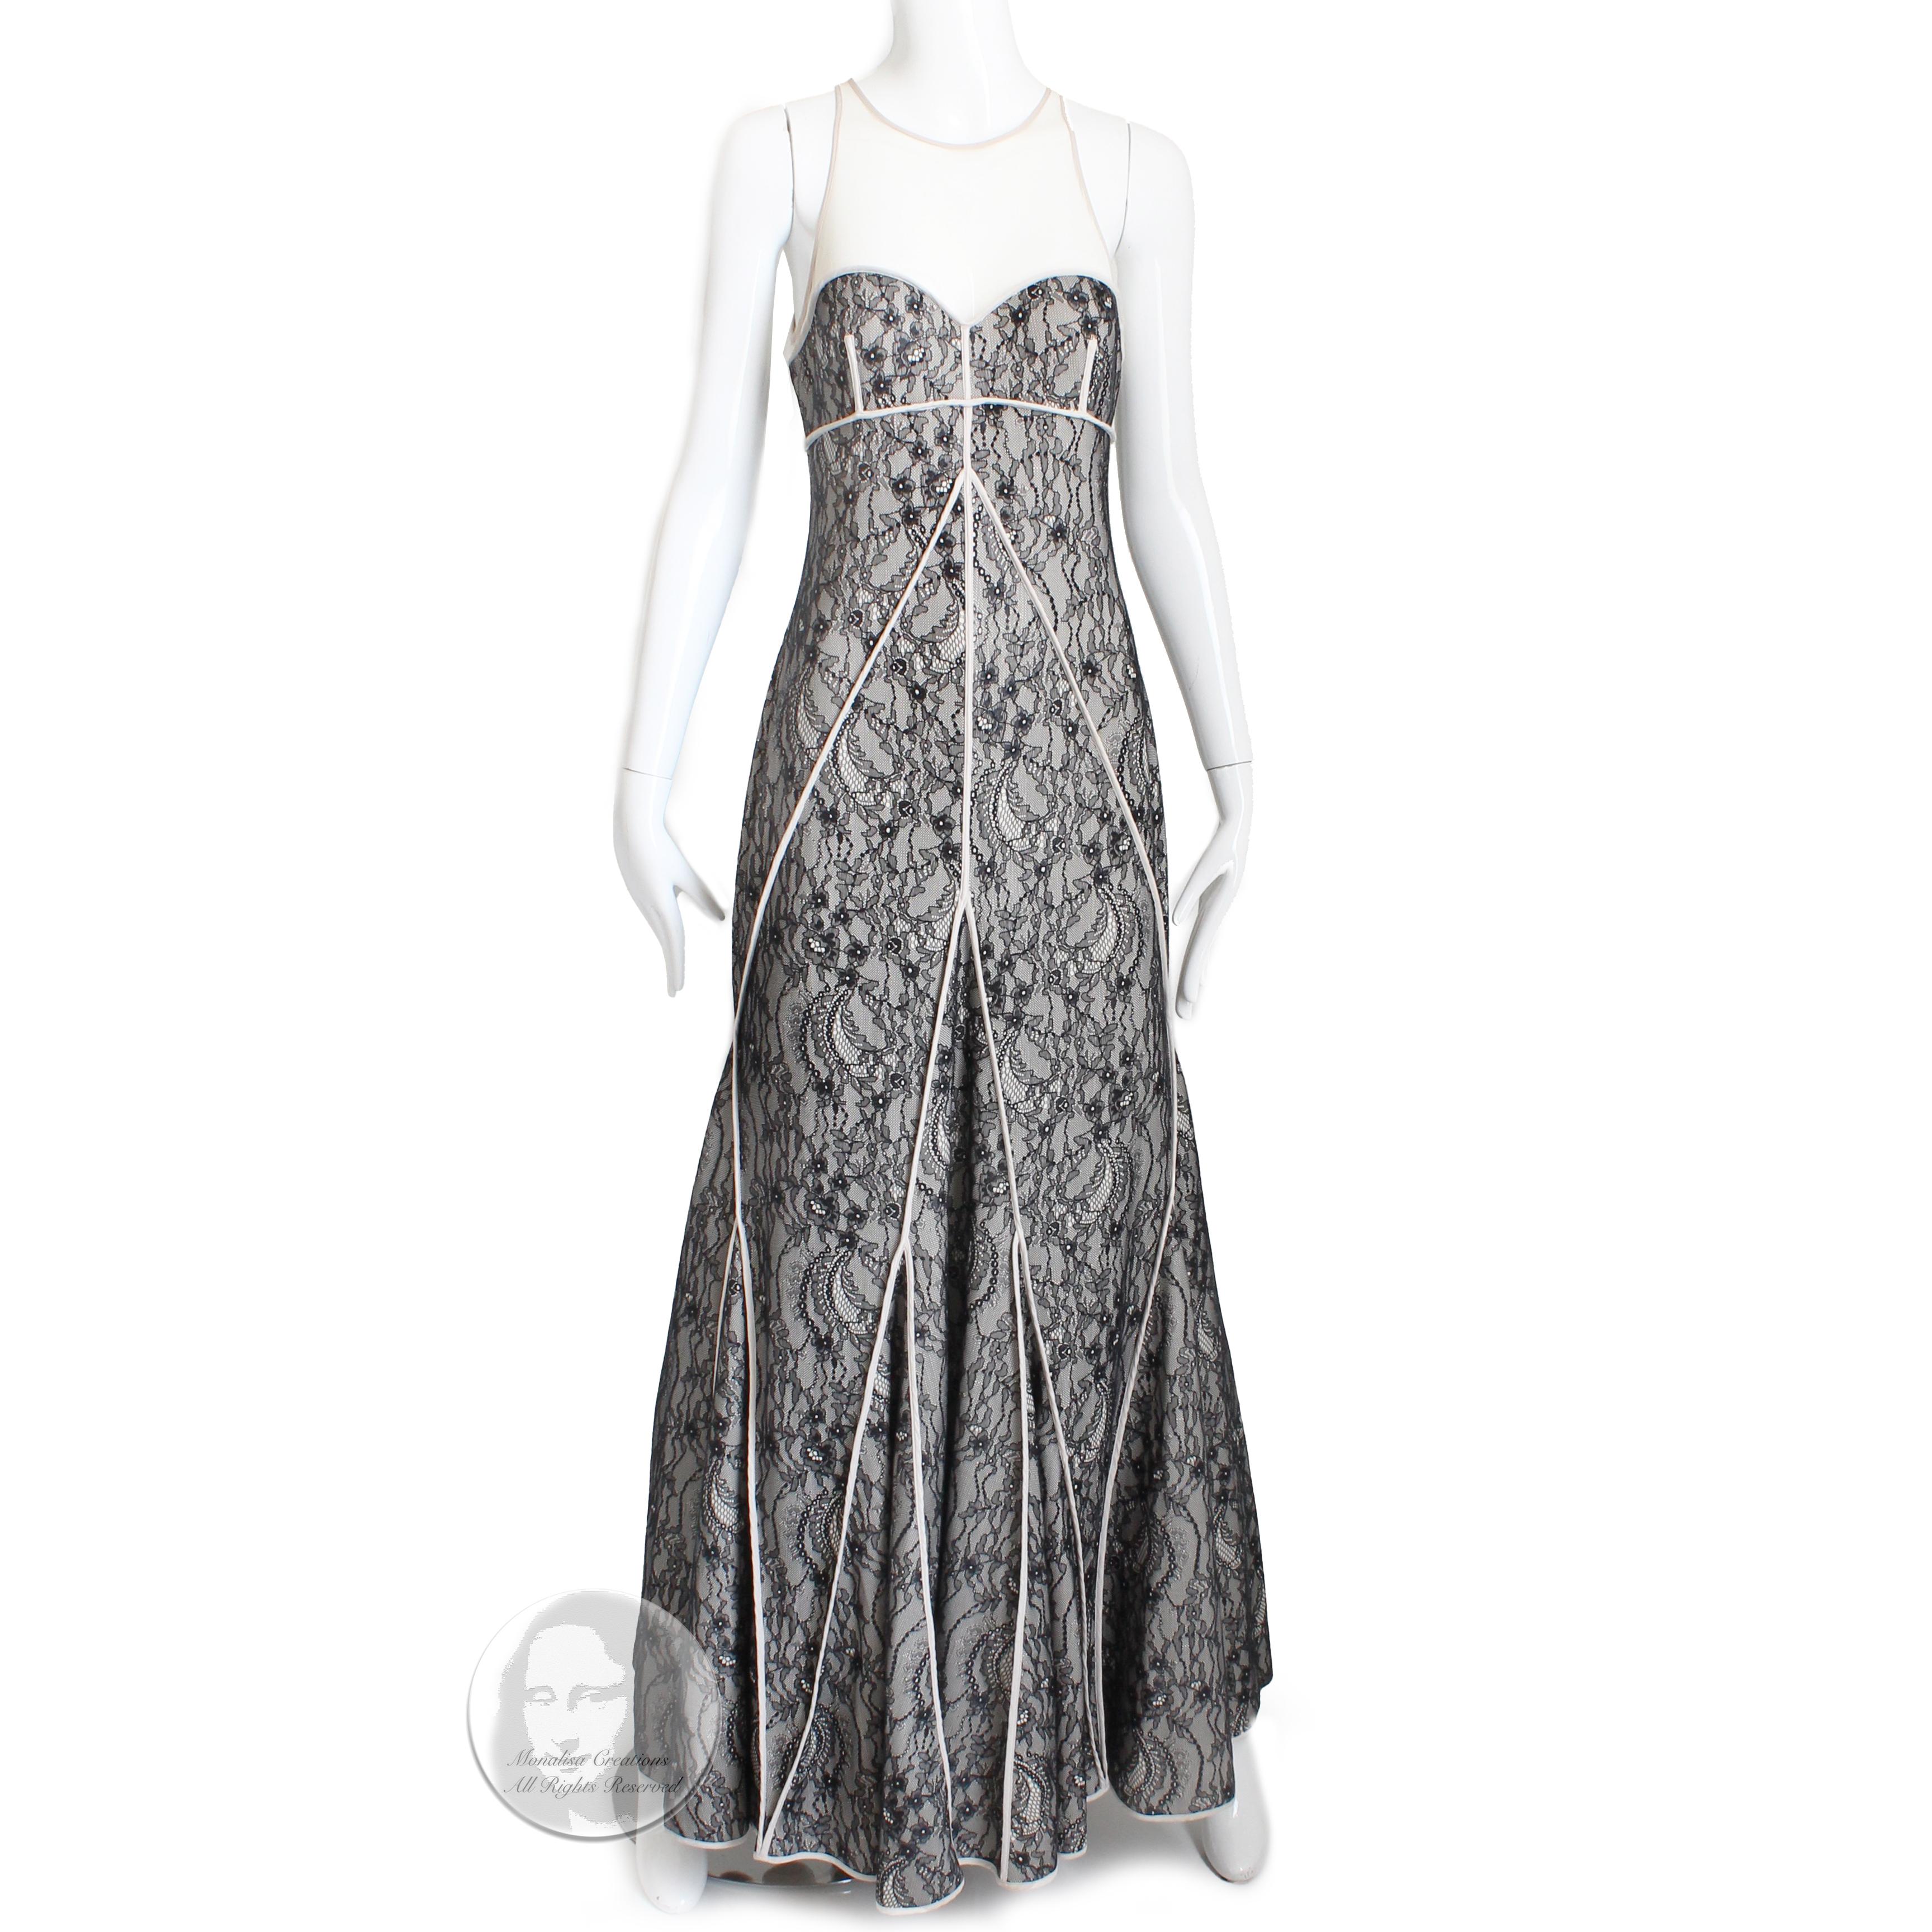 Halston Heritage Evening Gown Long Dress Fit & Flare Illusion Lace NWT NOS Sz M Neuf à Port Saint Lucie, FL